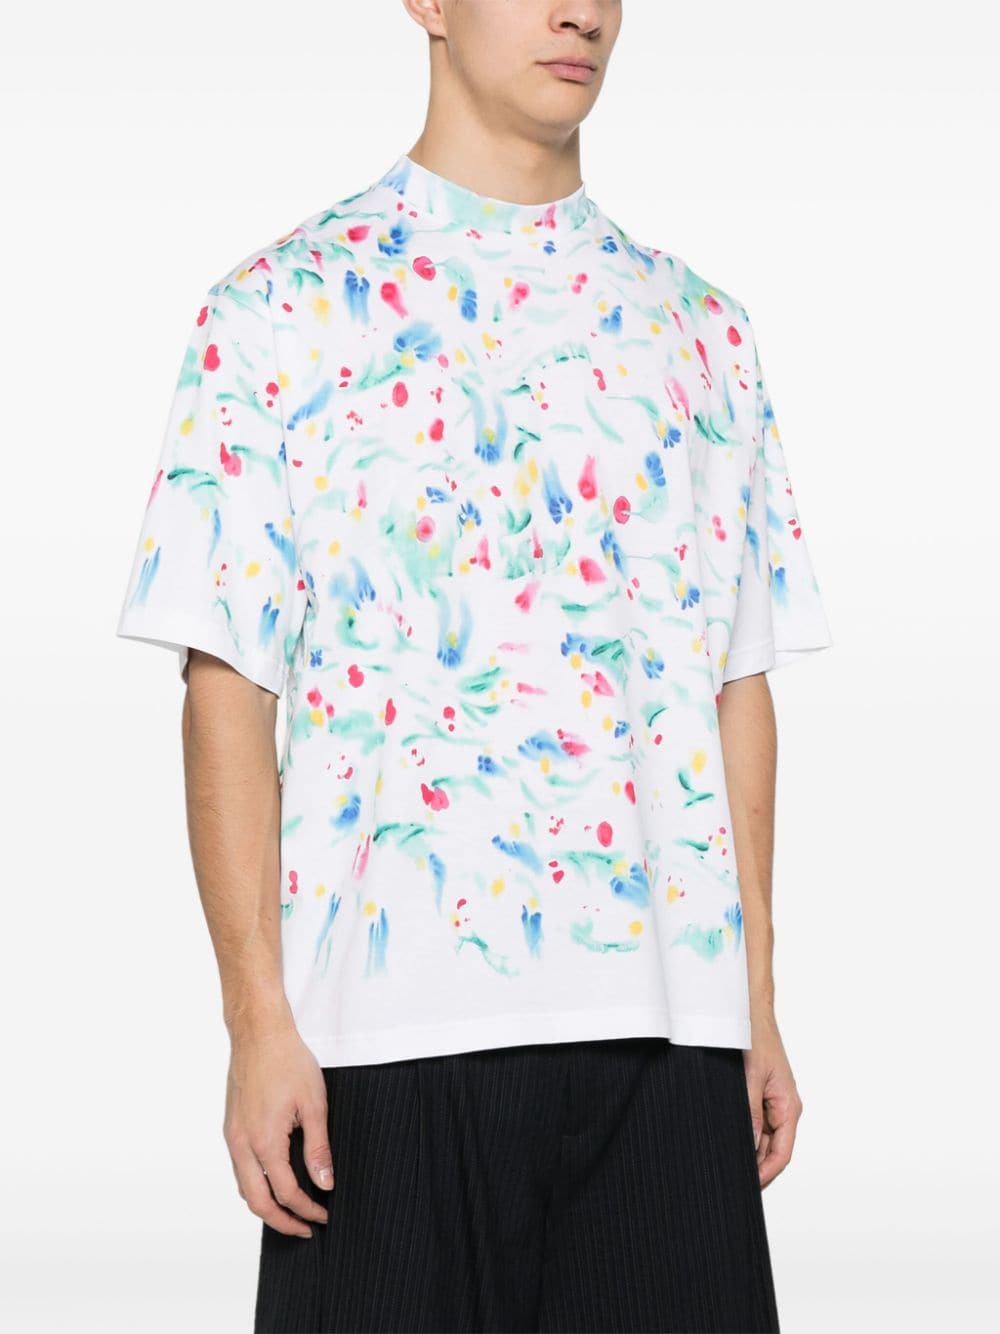 T-shirt in cotone con schizzi di vernice<br><br><br>